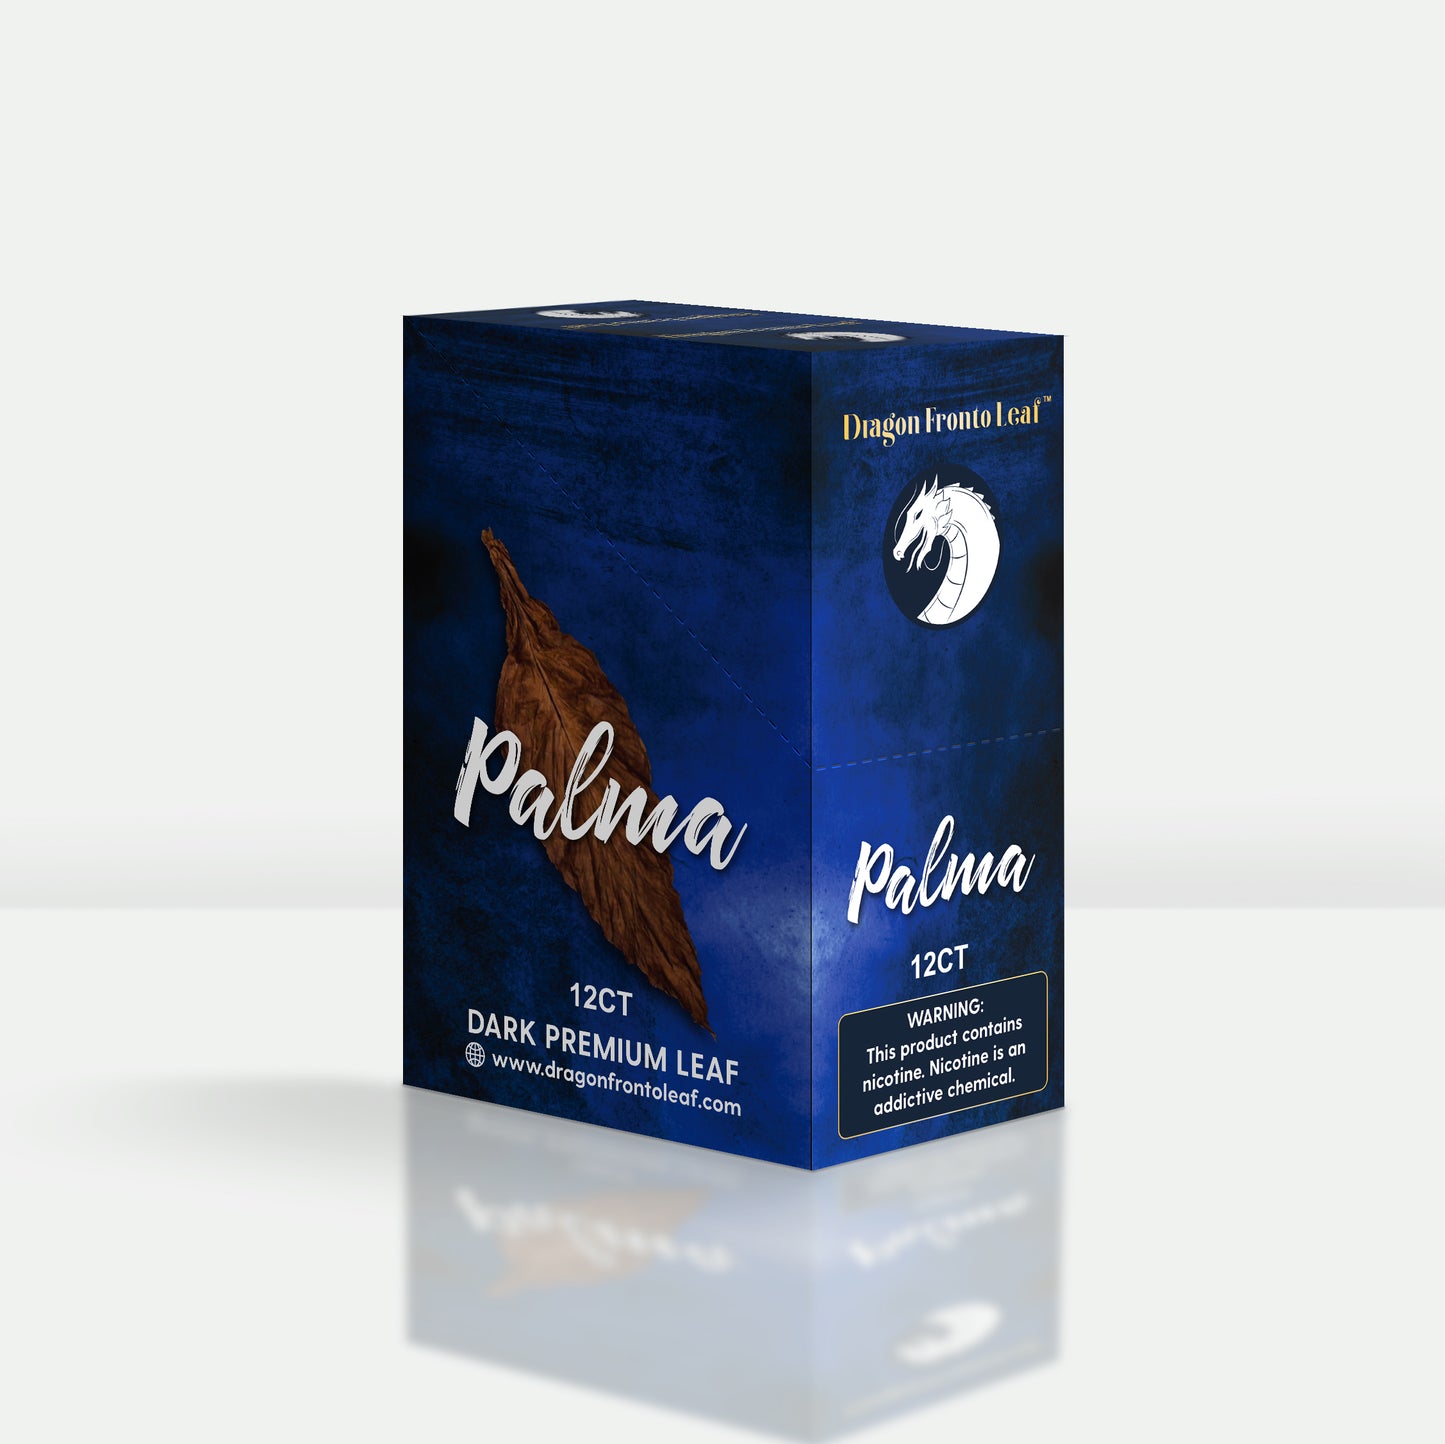 Palma Dragon Fronto Leaf Dark Premium Tobacco Leaf Box